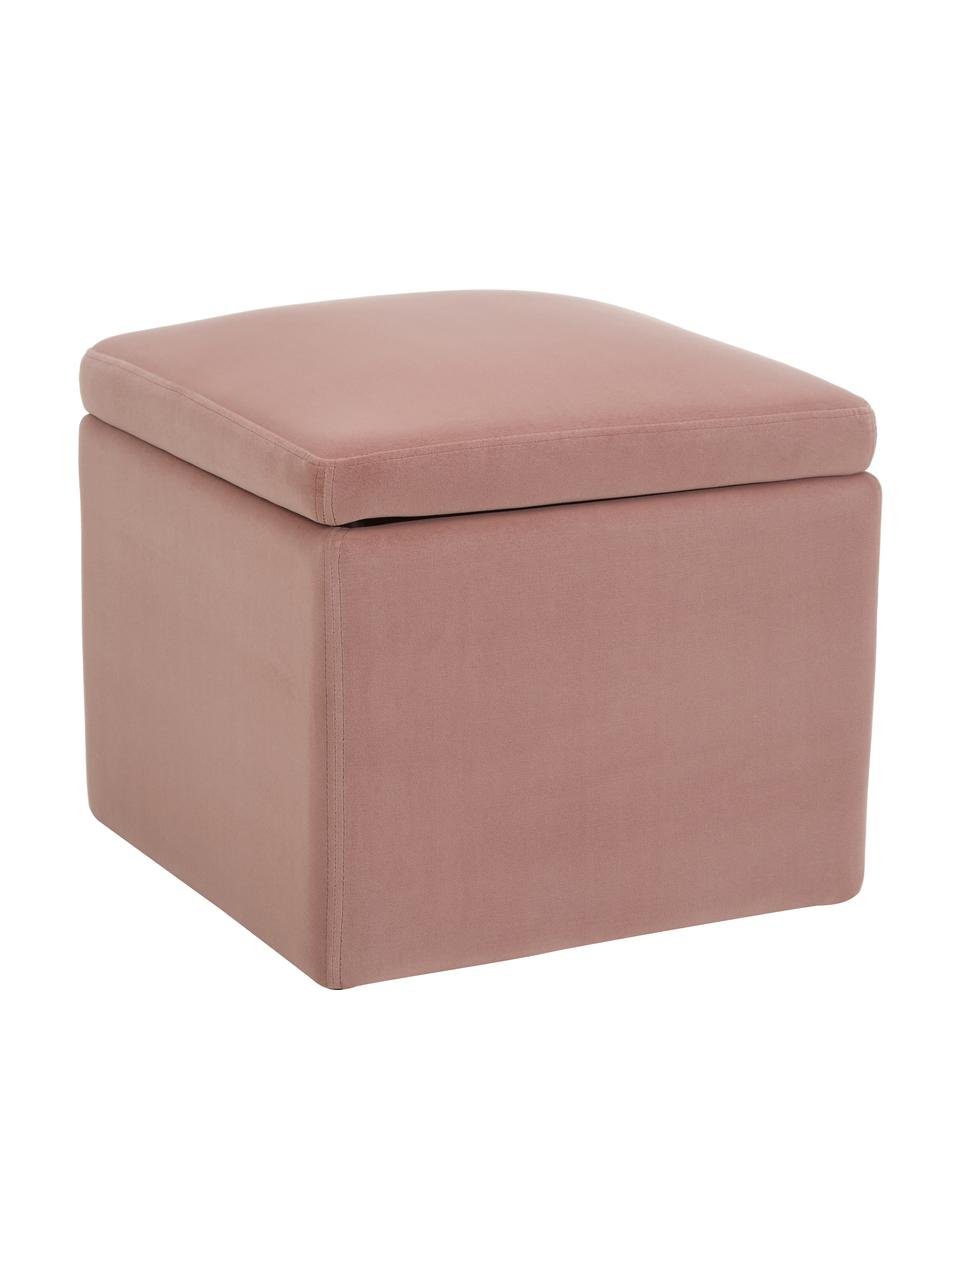 Pouf contenitore in velluto rosa Winou, Rivestimento: velluto (poliestere) Il r, Velluto rosa, Larg. 50 x Alt. 48 cm